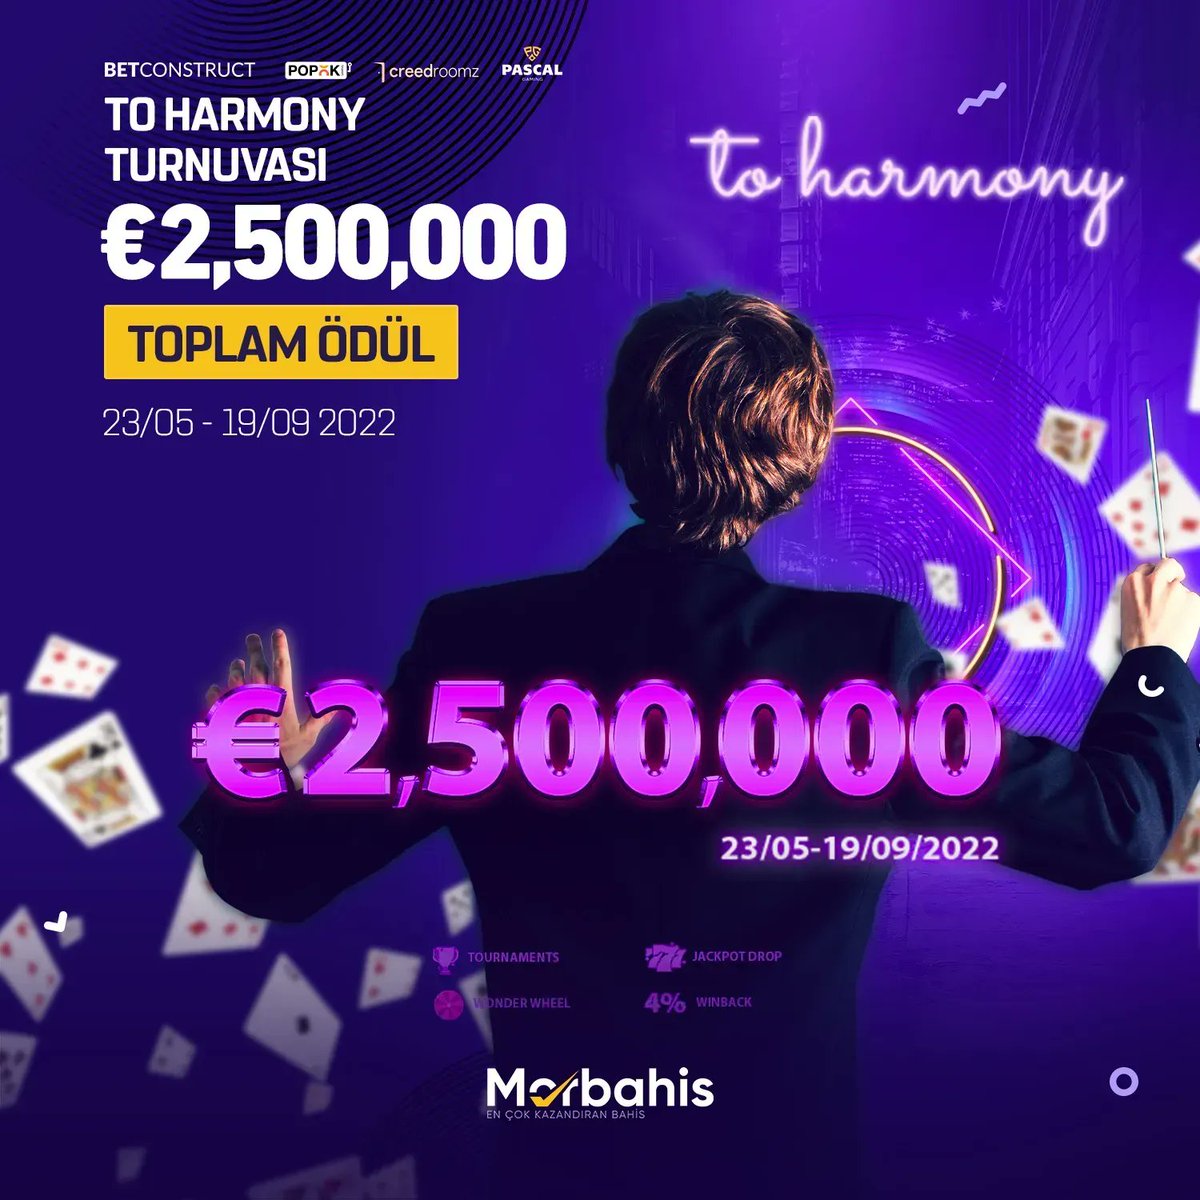 🎰 To Harmony Turnuvasıyla €2,500,000 ödül havuzu MorBahis'te! 🤑 19 Eylül'e kadar milyoner olma şansın çok yüksek, gecikmeden Morbahis'te turnuvaya katıl! 💜 Morbahis - buff.ly/3kqW7Ug